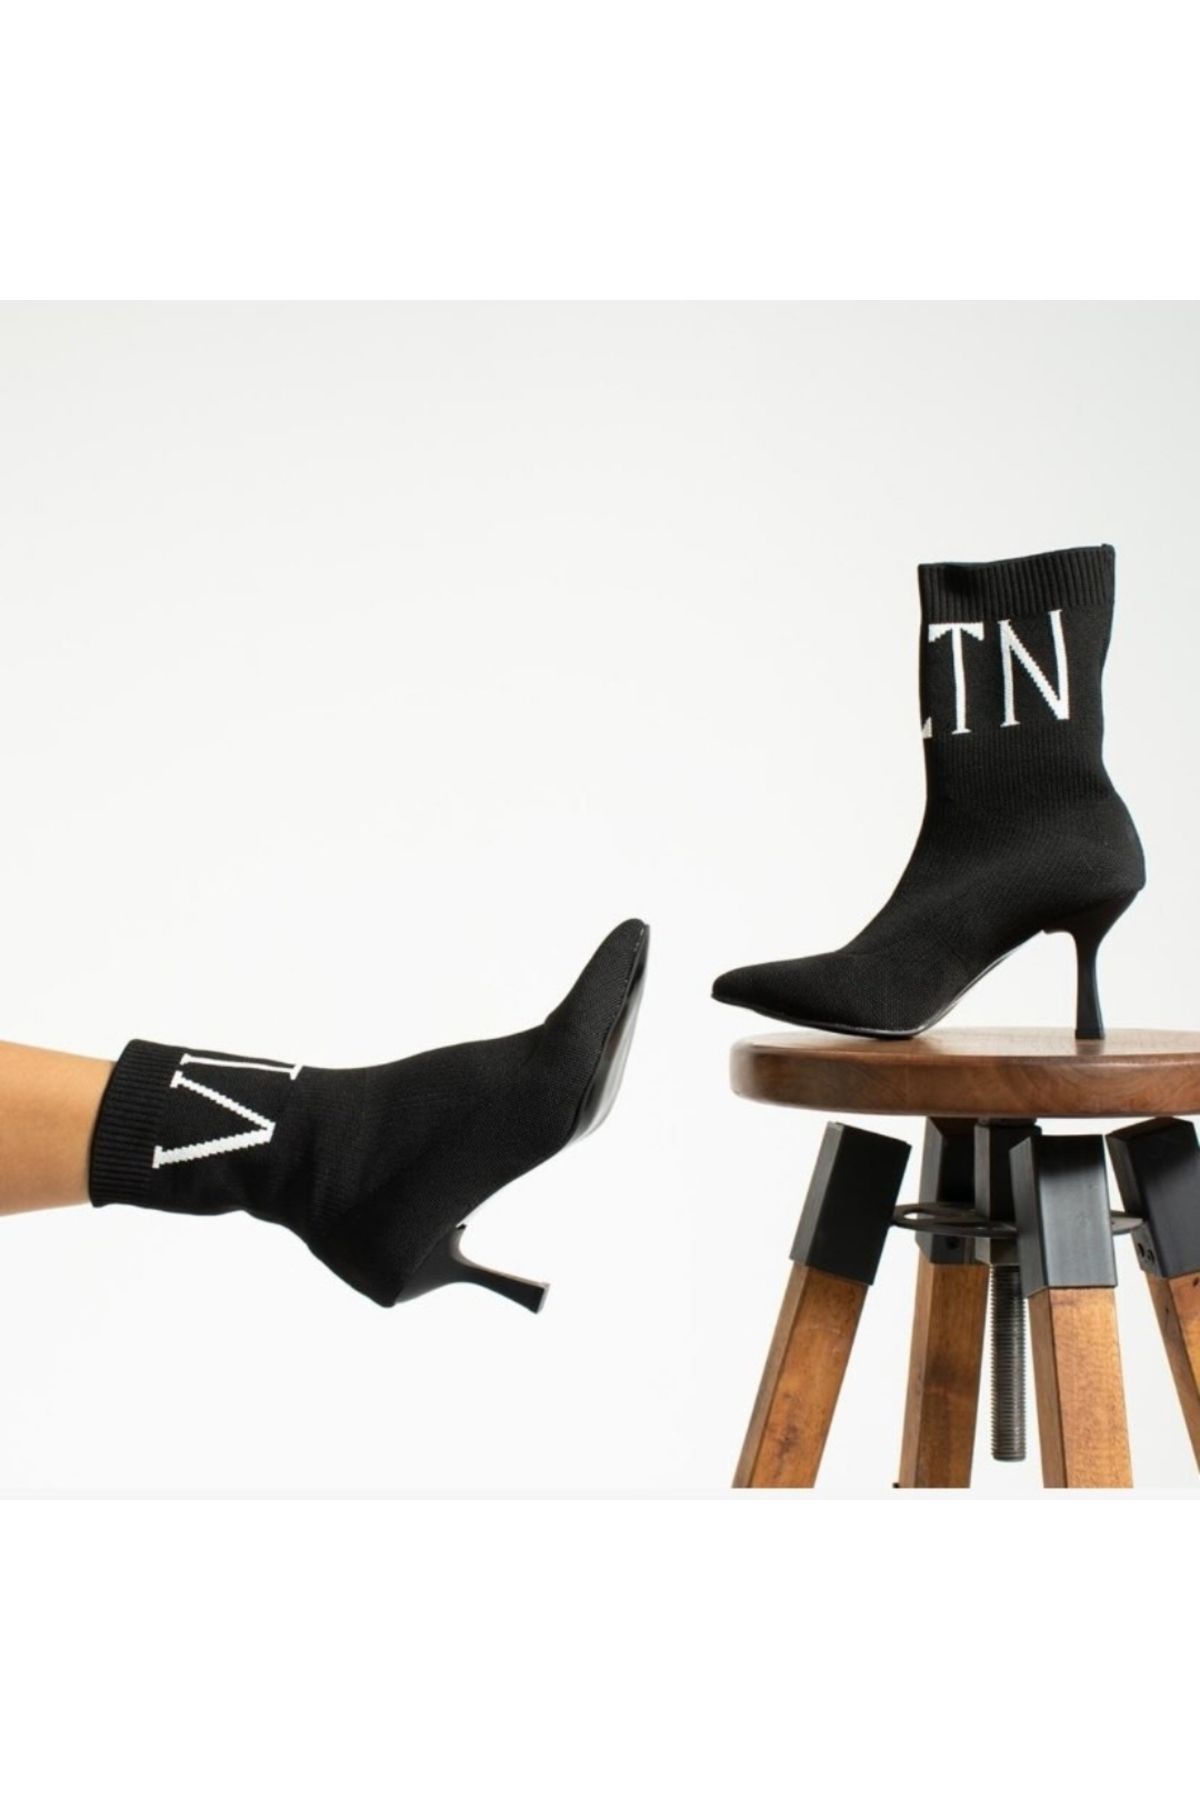 Afilli Kadın Siyah Triko Sivri Burun Şık Çorap Streç Günlük Kadeh Topuk Bot Yarım Çizme Ayakkabı